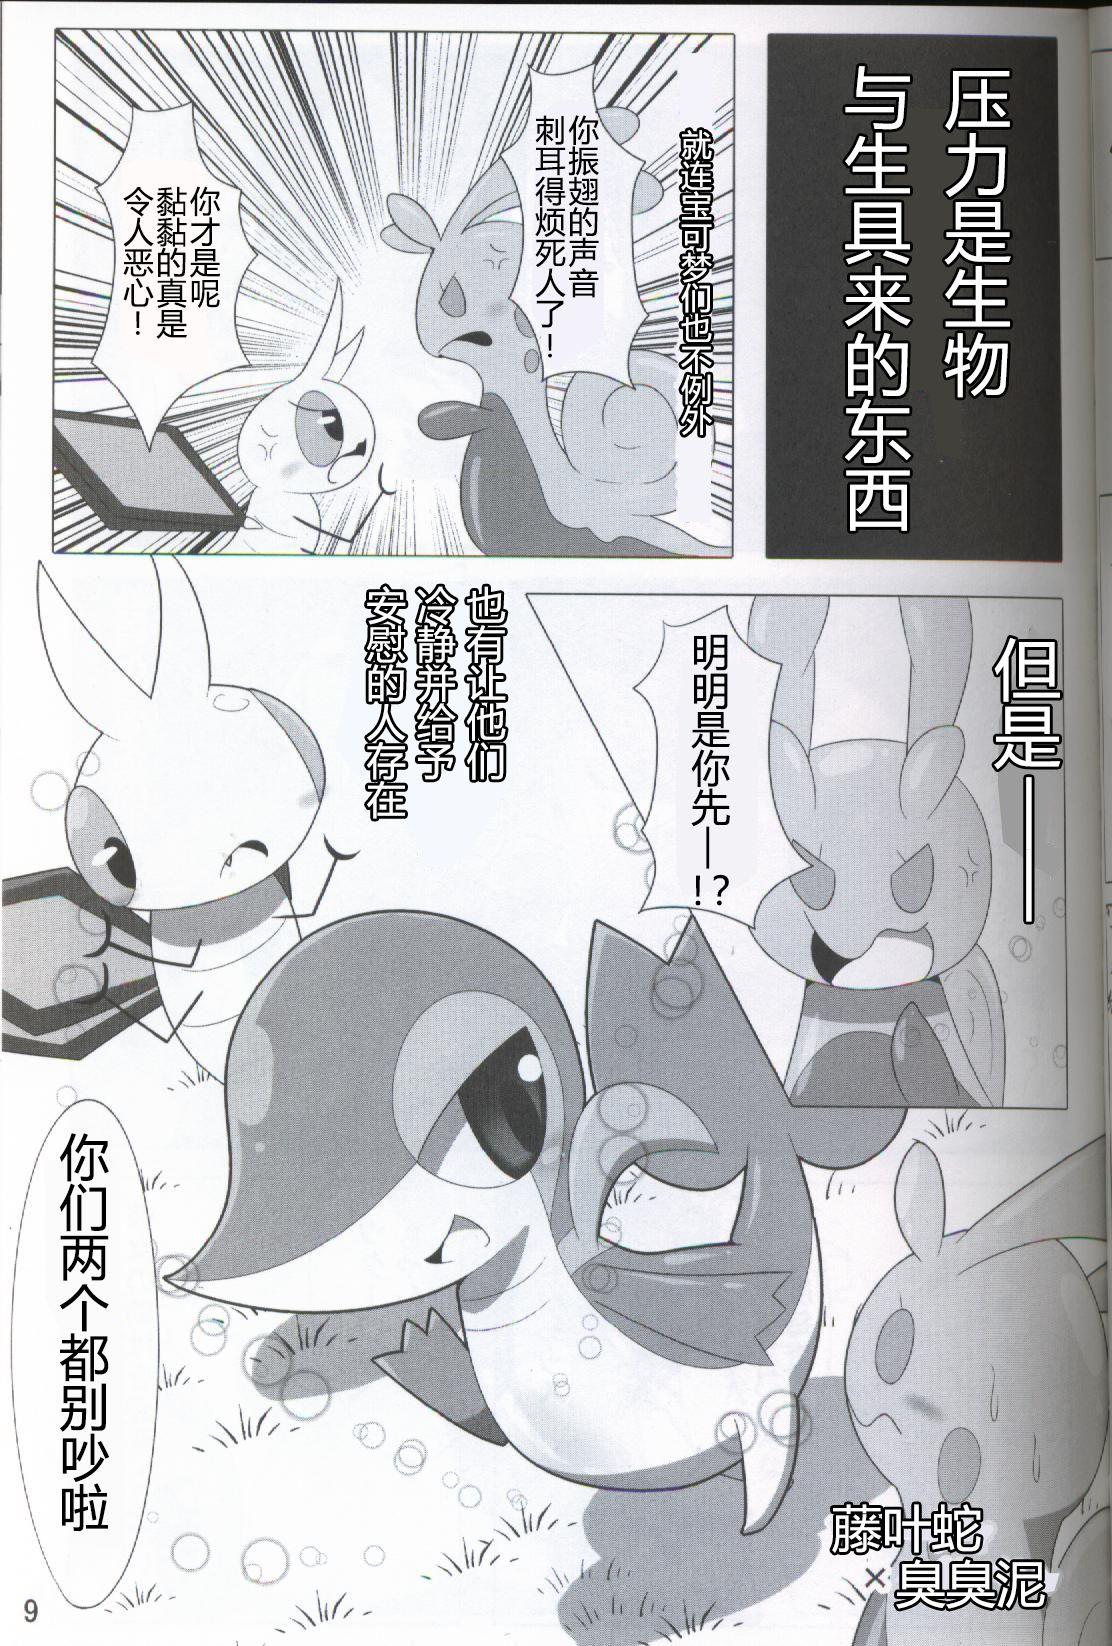 Spycam Pokéda | 宝可堕 - Pokemon Stepbrother - Page 10